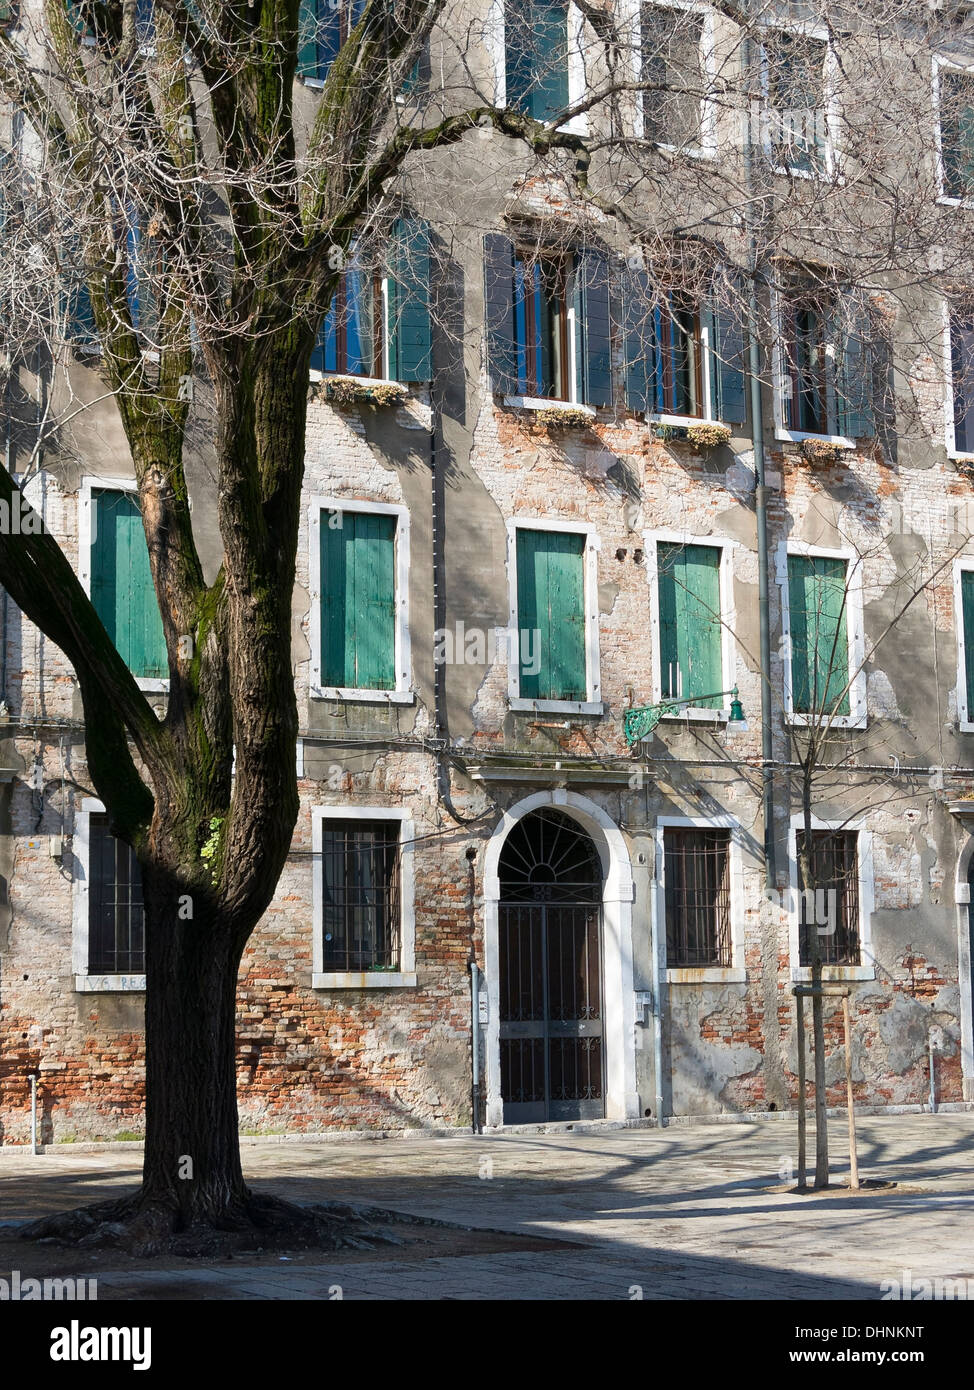 Soleggiato anteriore del vecchio edificio in pietra in piazza pavimentata con albero, Venezia, Italia Foto Stock